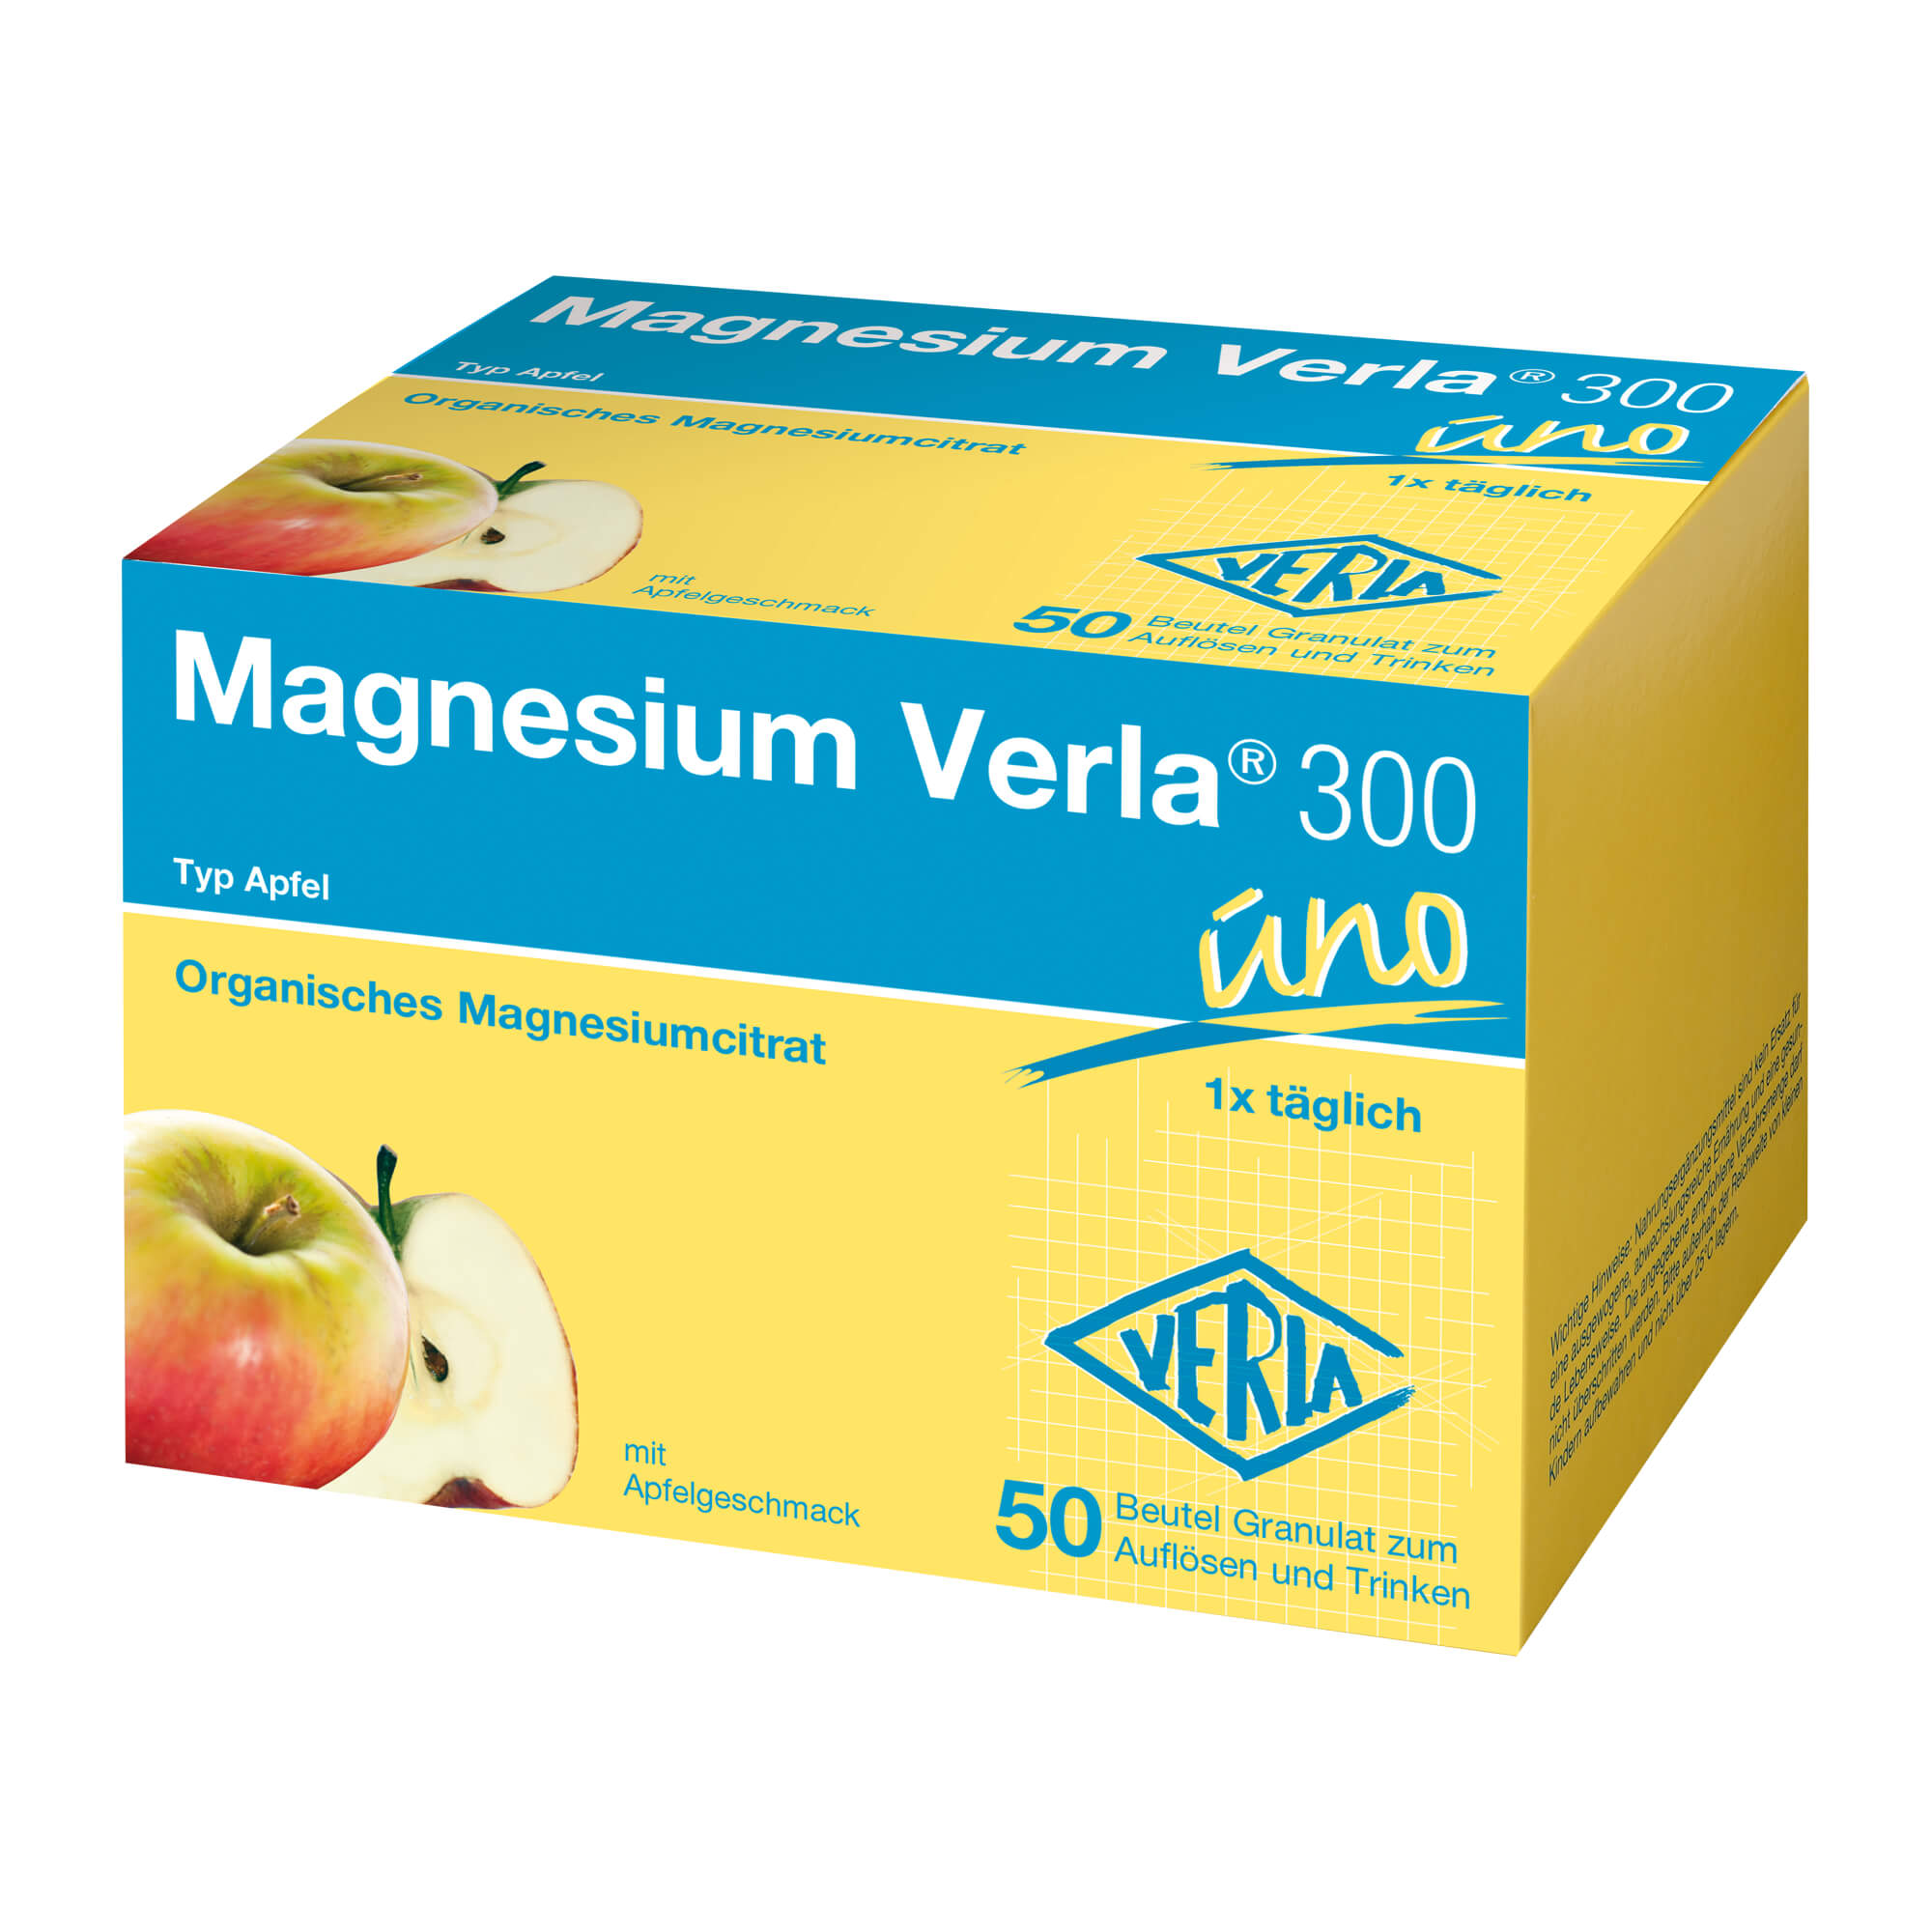 Nahrungsergänzungsmittel mit hochdosiertem Magnesium. Trinkgranulat mit Apfelgeschmack.